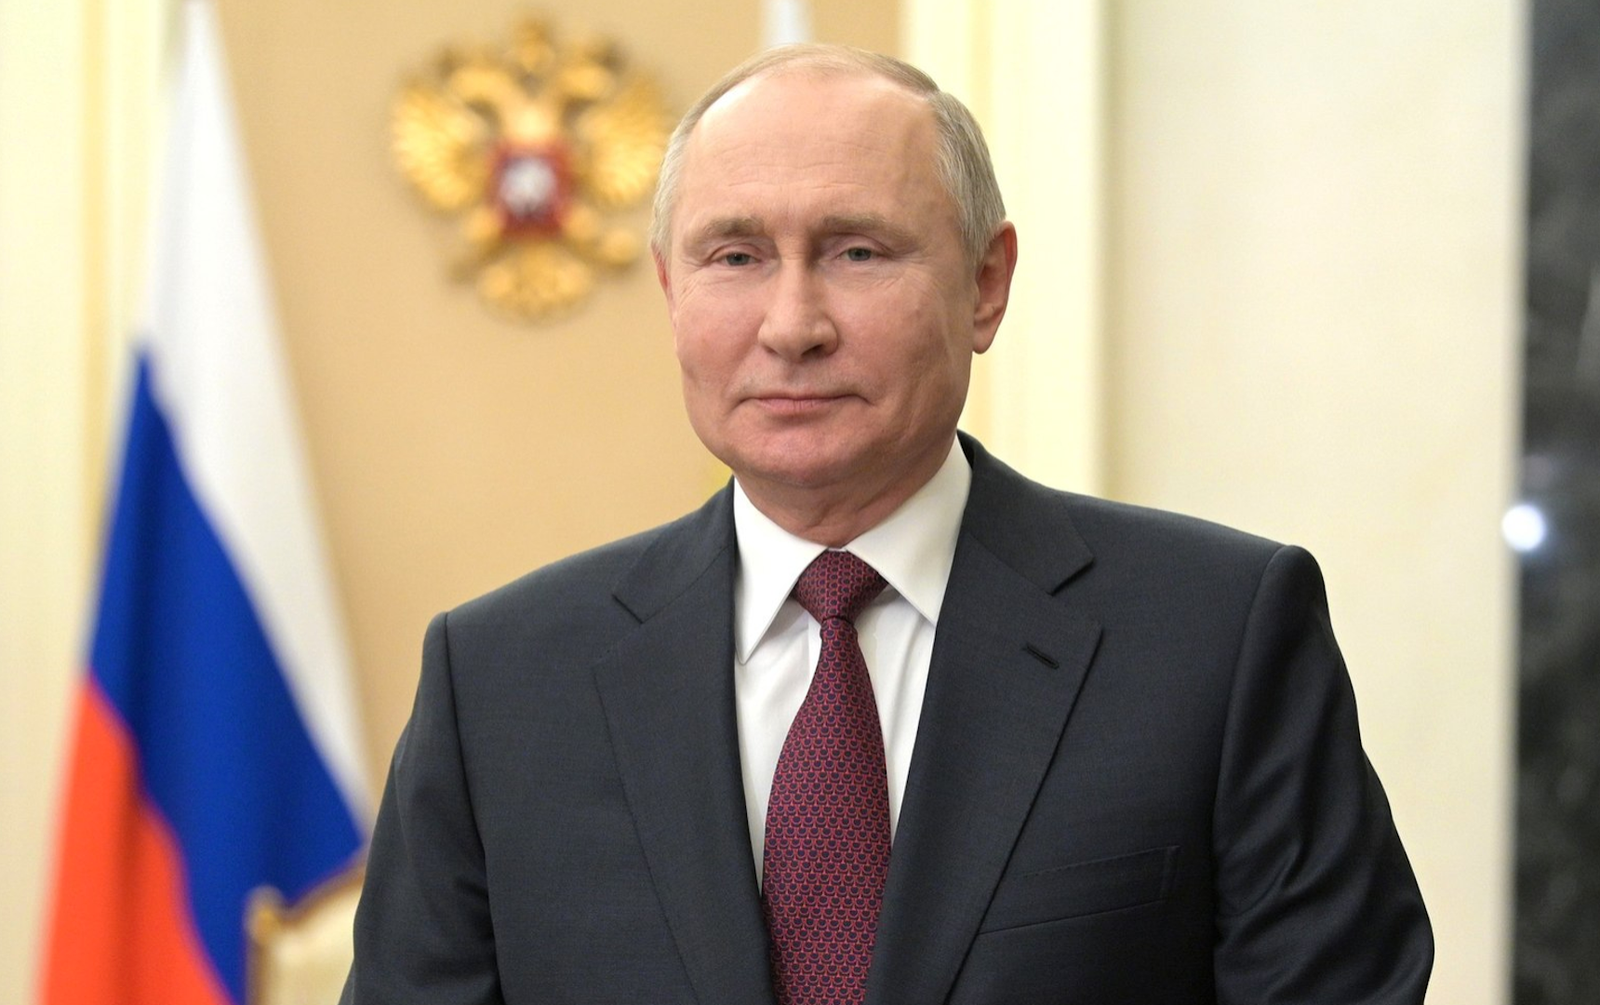 Guerra com a Otan seria uma catástrofe global, diz Putin